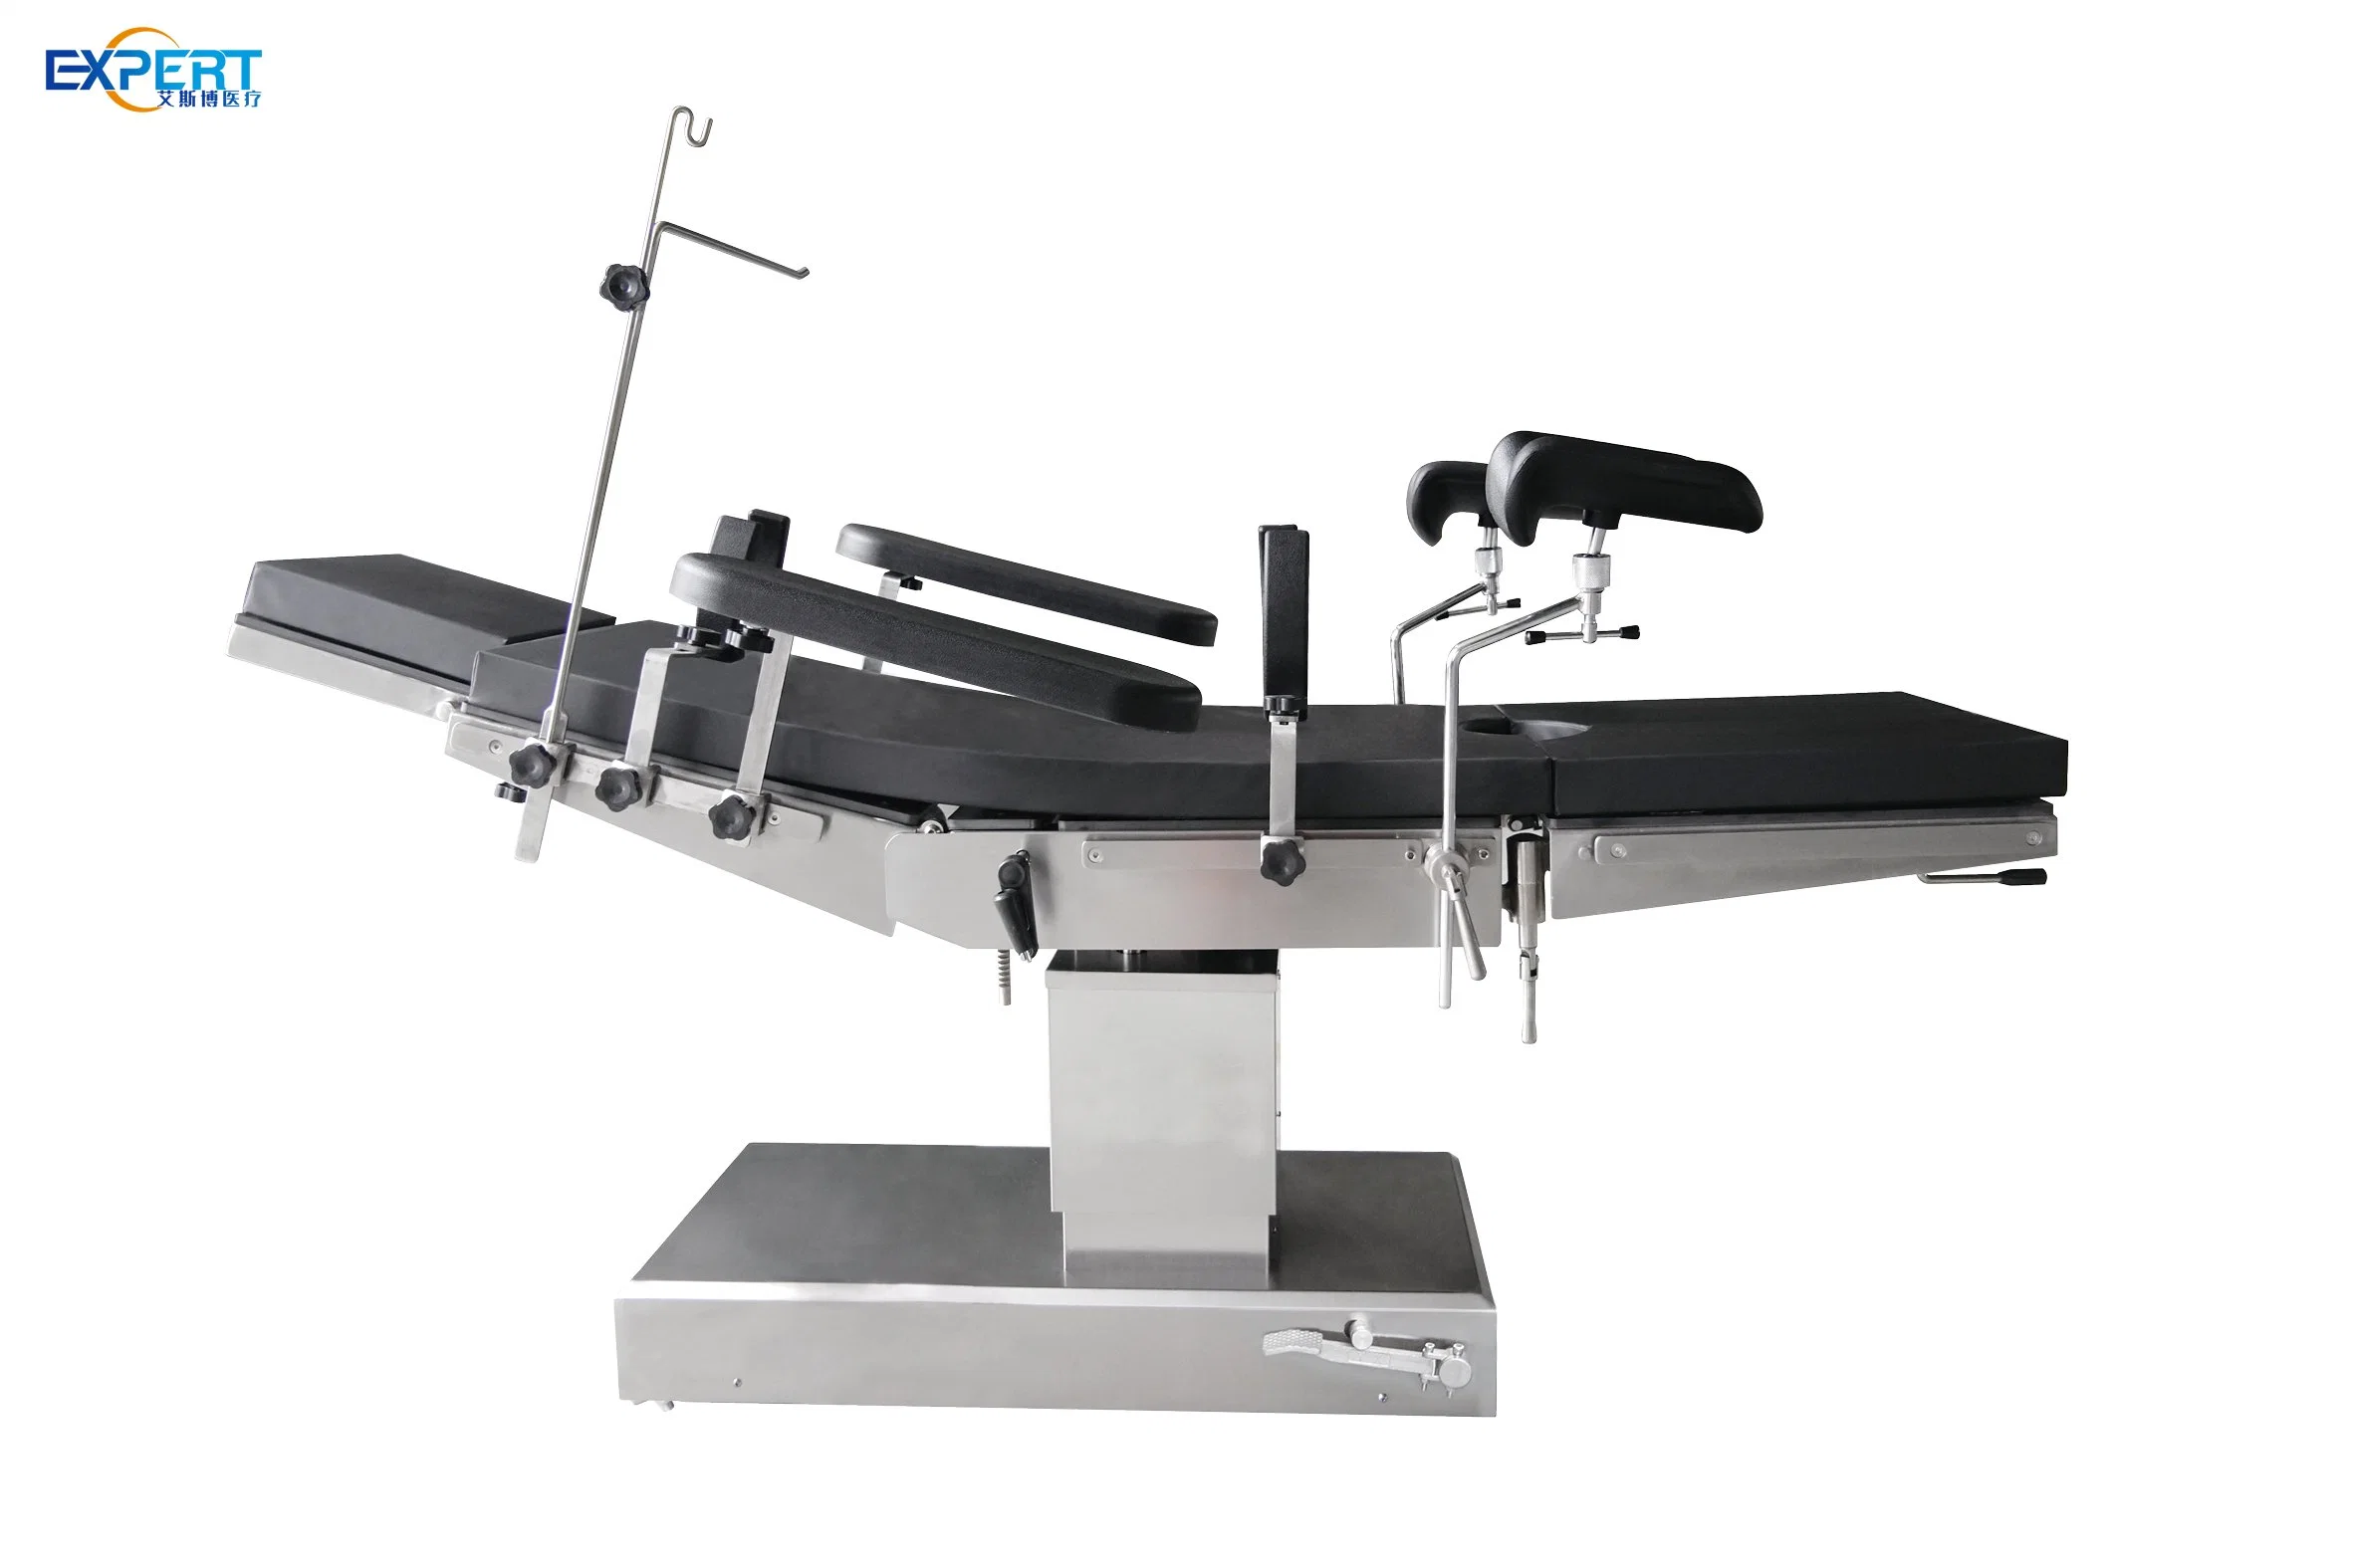 Hôpital matériel médical OT Table chirurgicale électrique opération-Table orthopédique